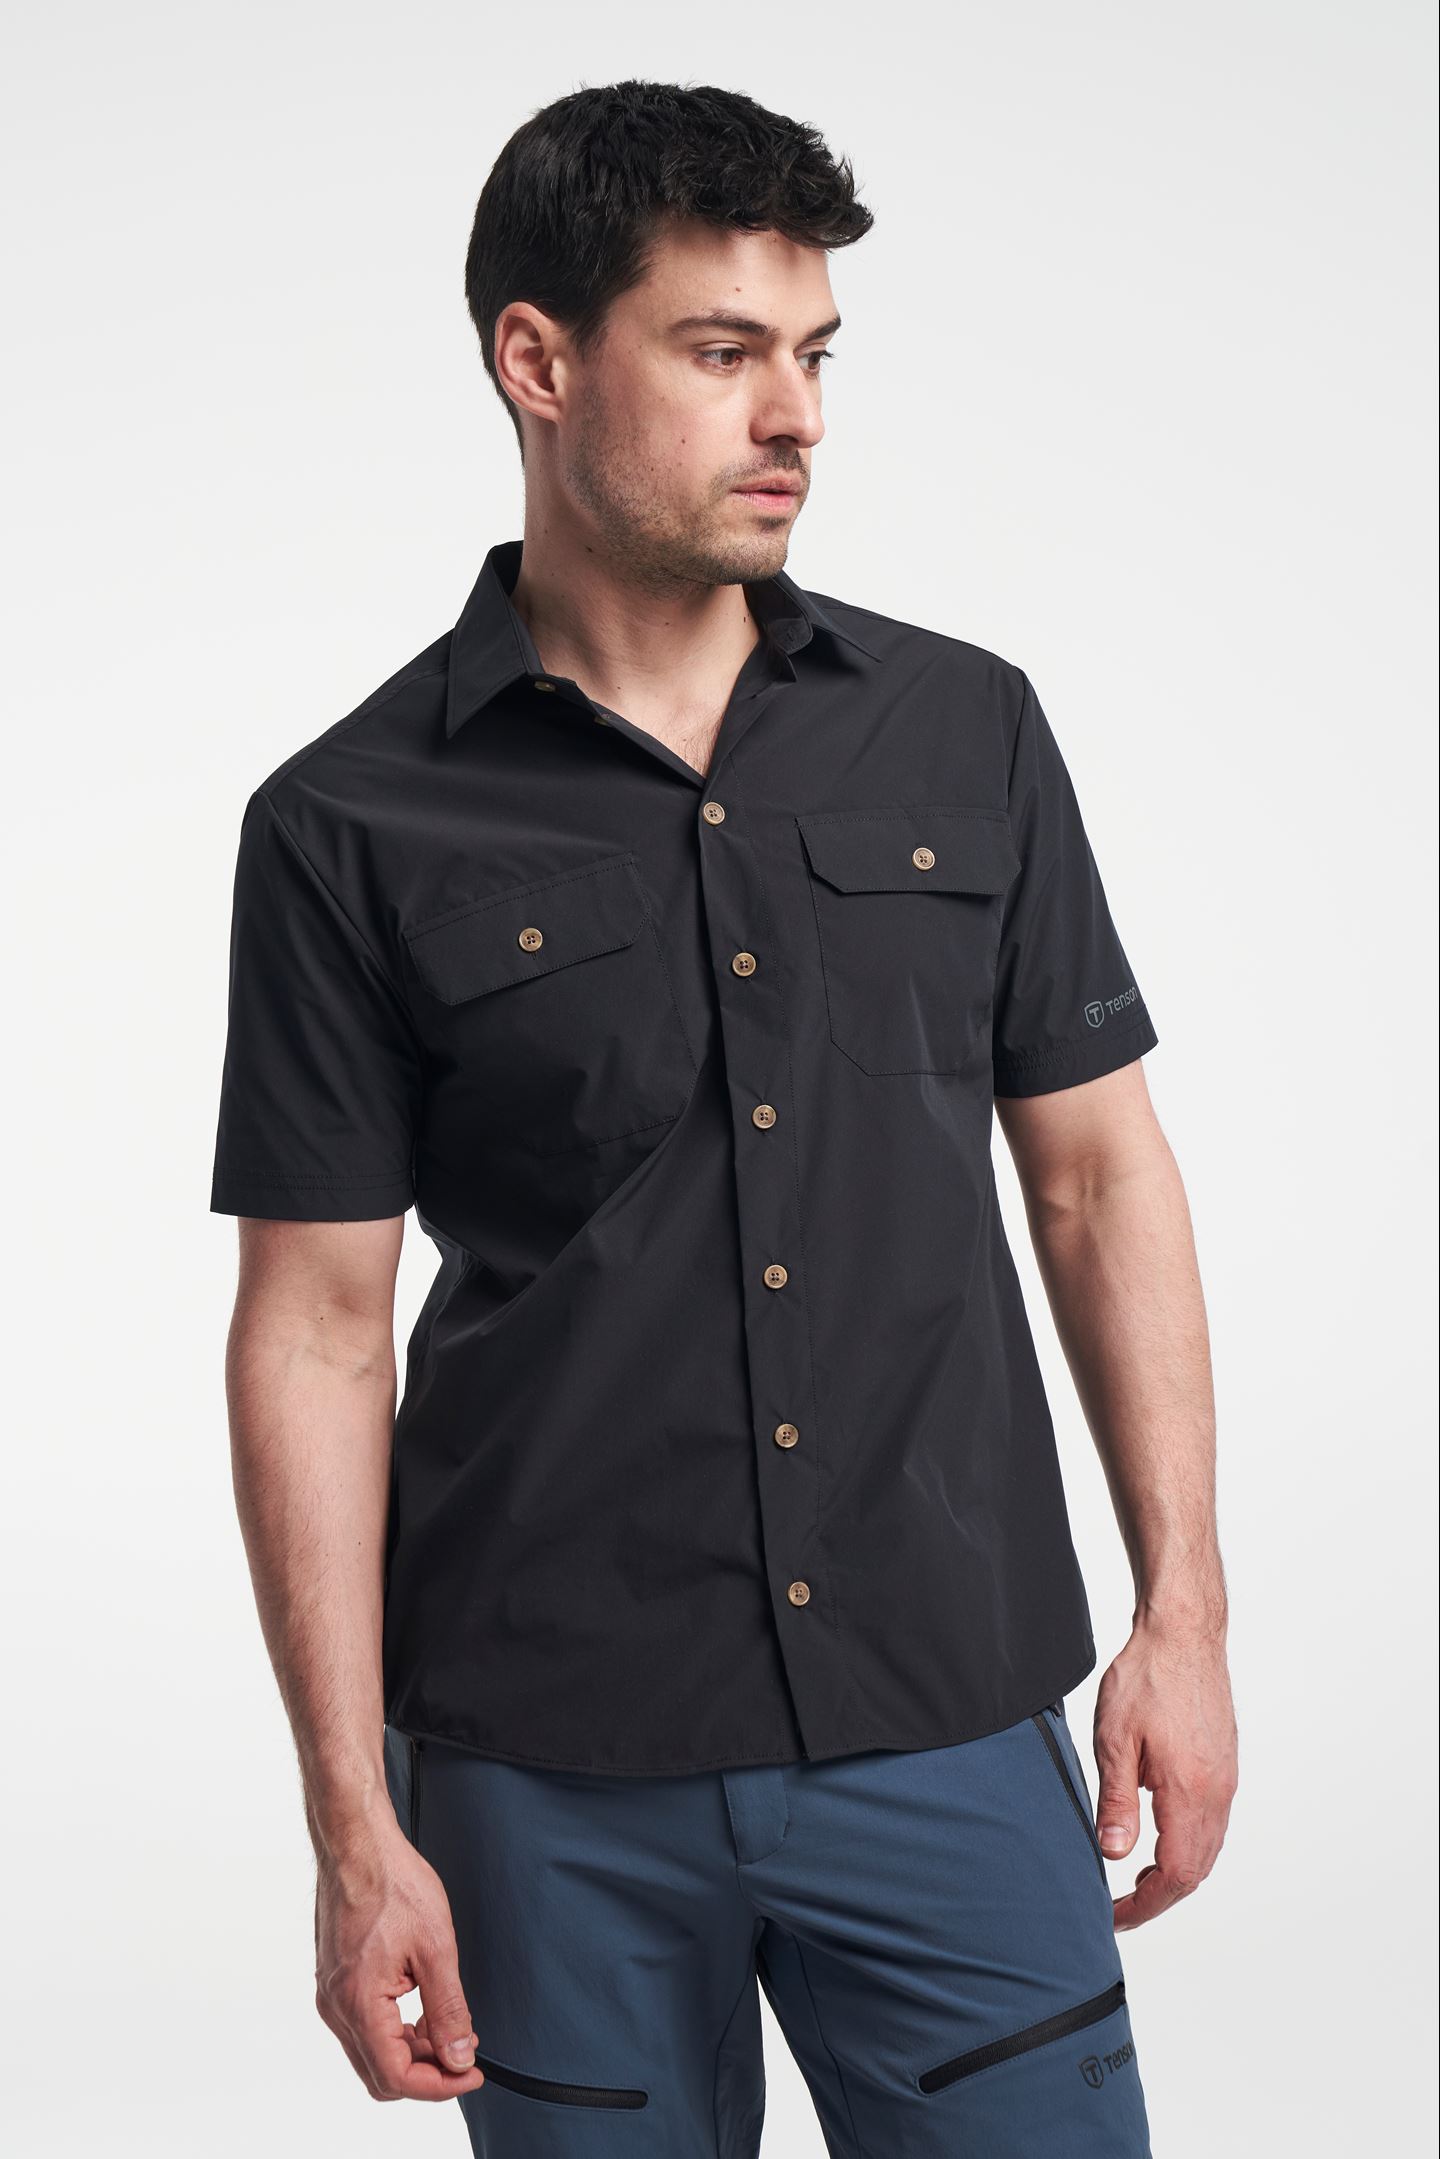 tijdelijk schild Decoratief TXlite Shirt Short - Men's Short Sleeve Shirt - Black